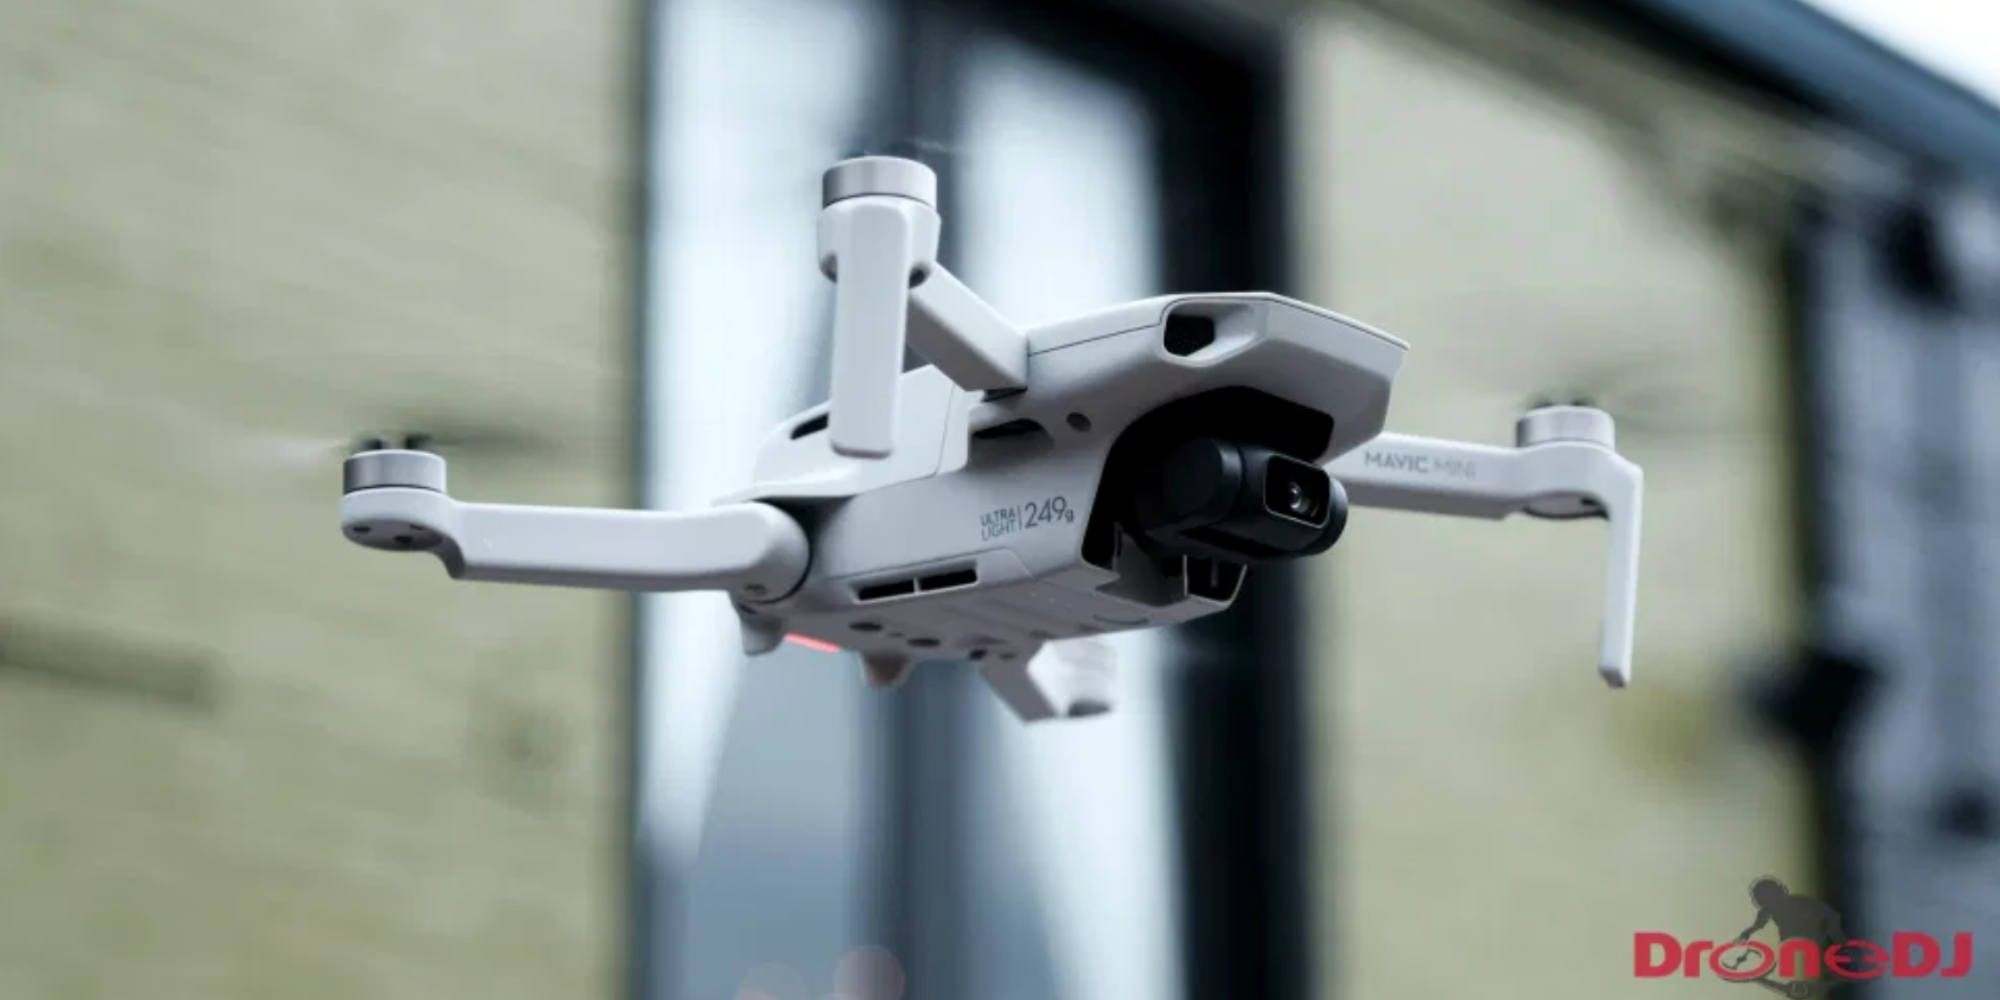 Symptomer bibliotekar I modsætning til The rules for sub-250 gram drones might just surprise you - DroneDJ